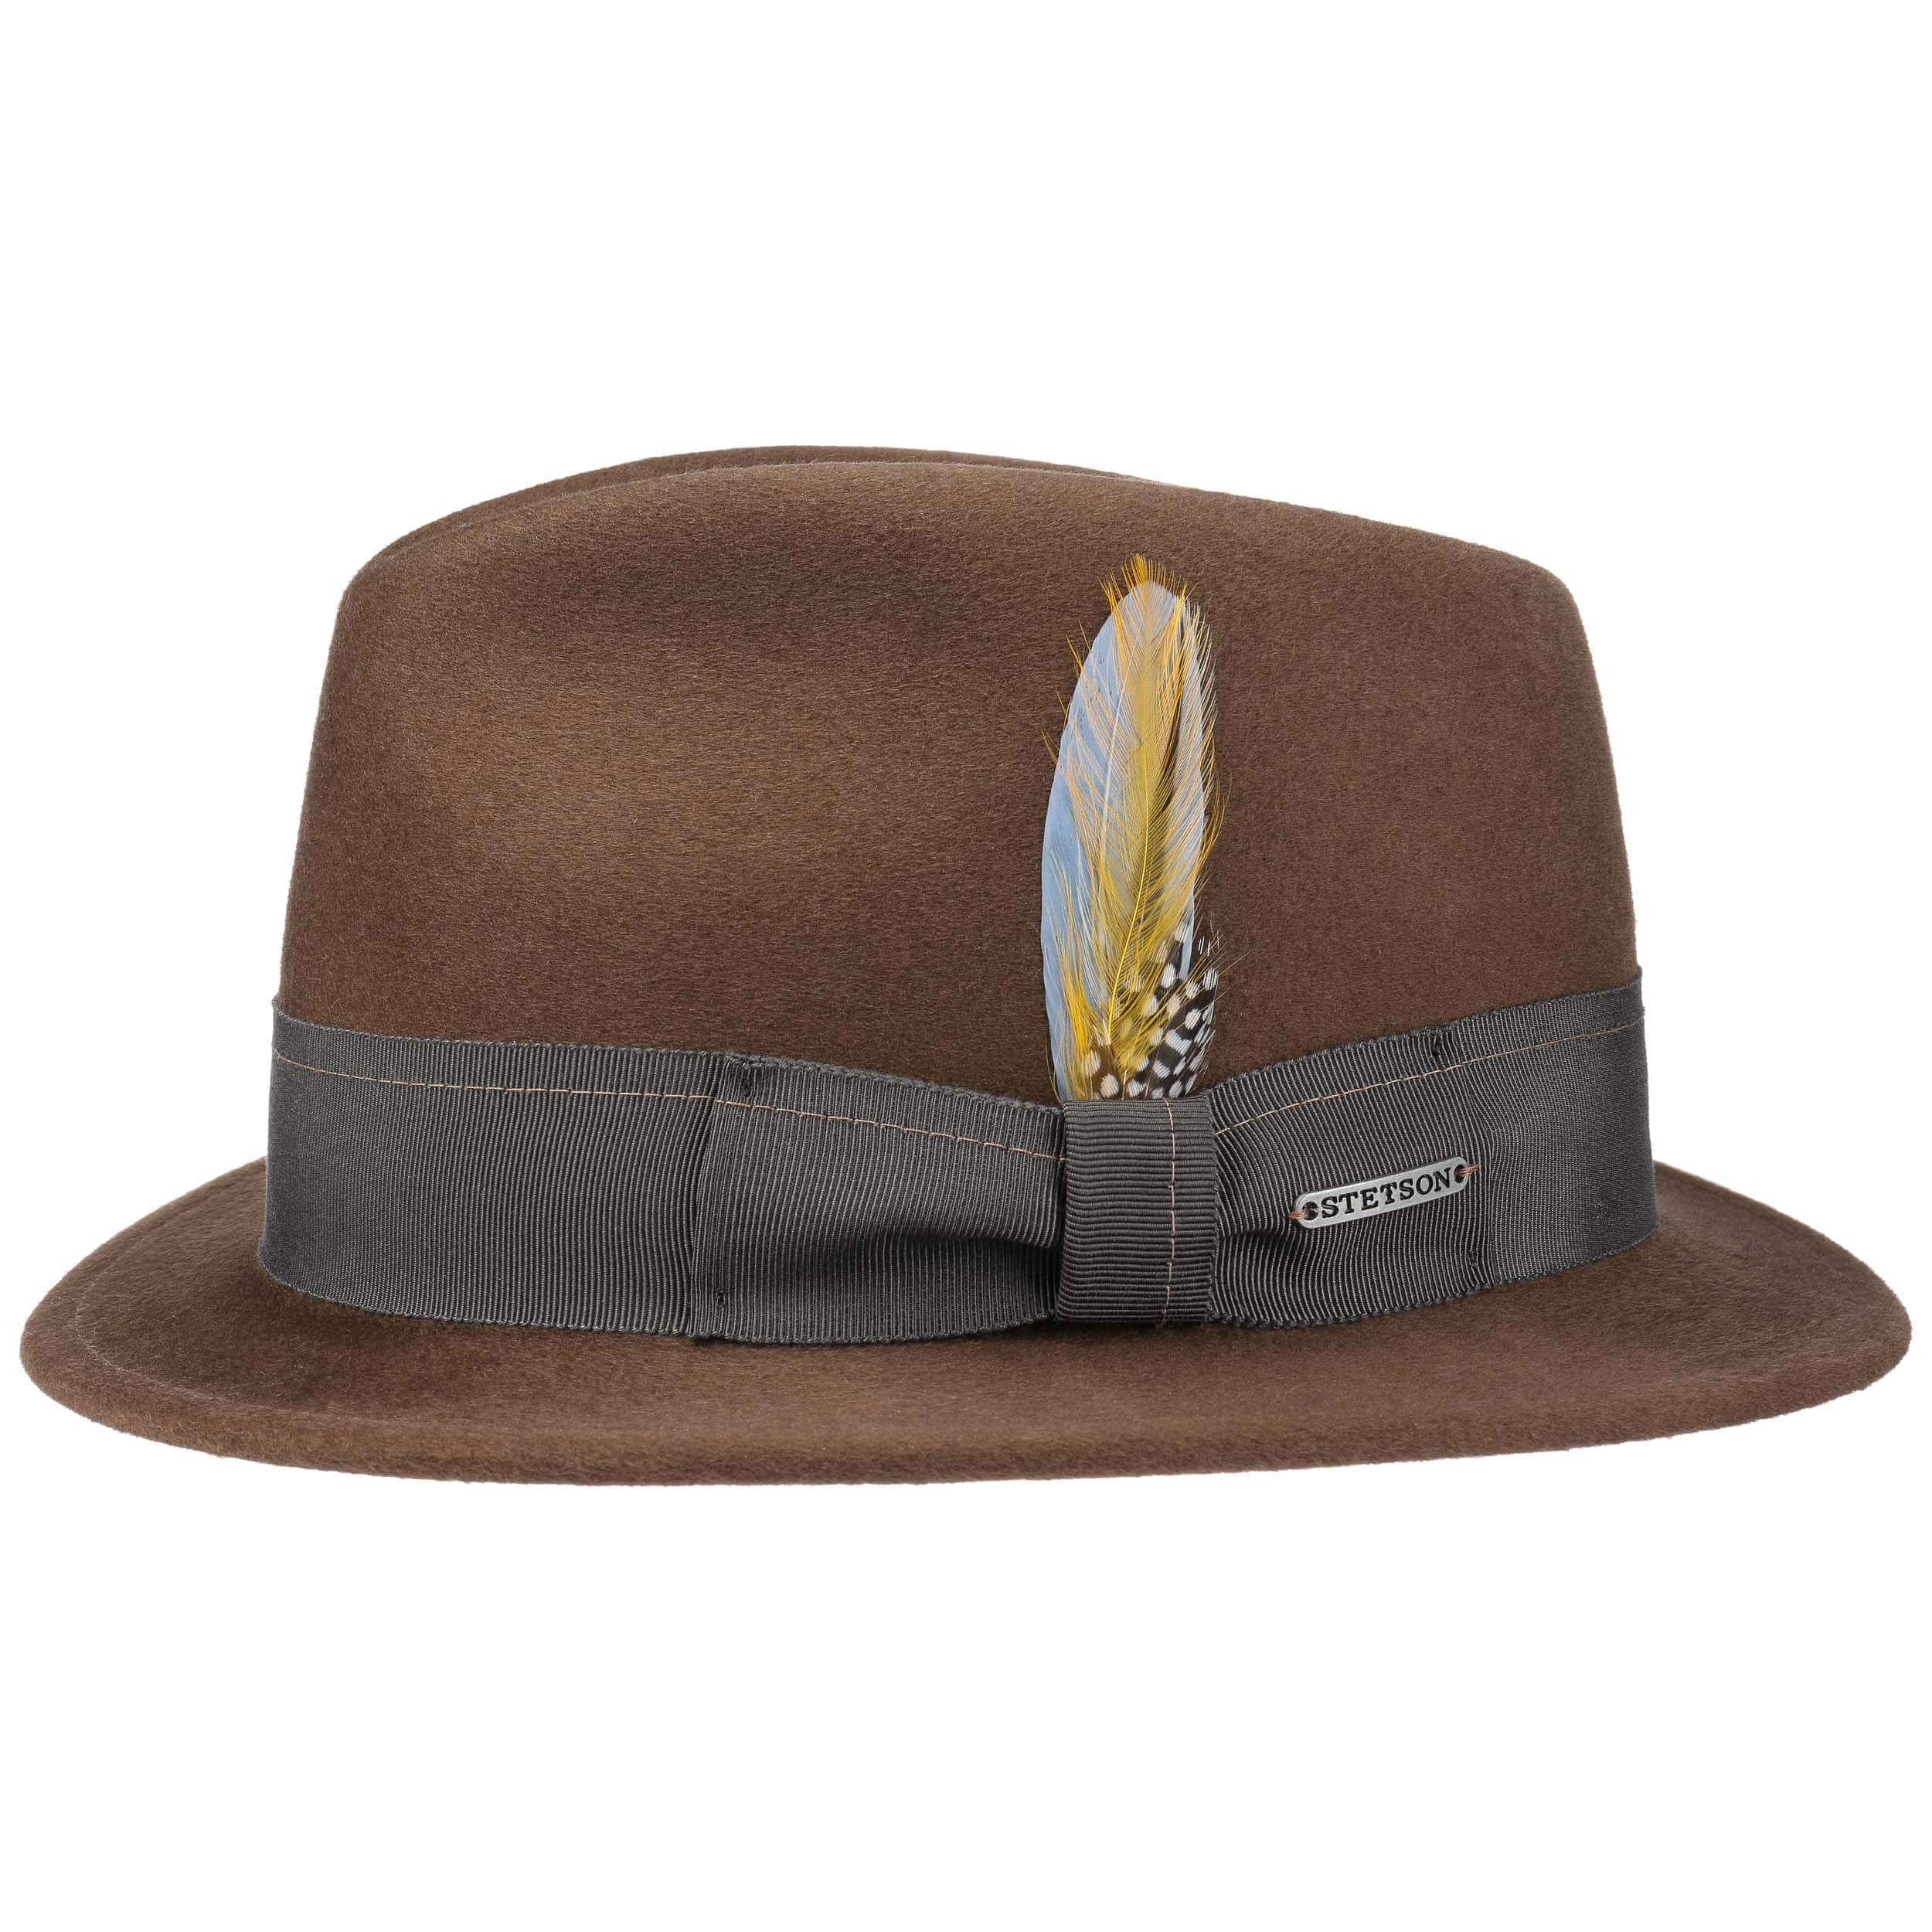 Edmon Lux Finish VitaFelt Hat by Stetson - 169,00